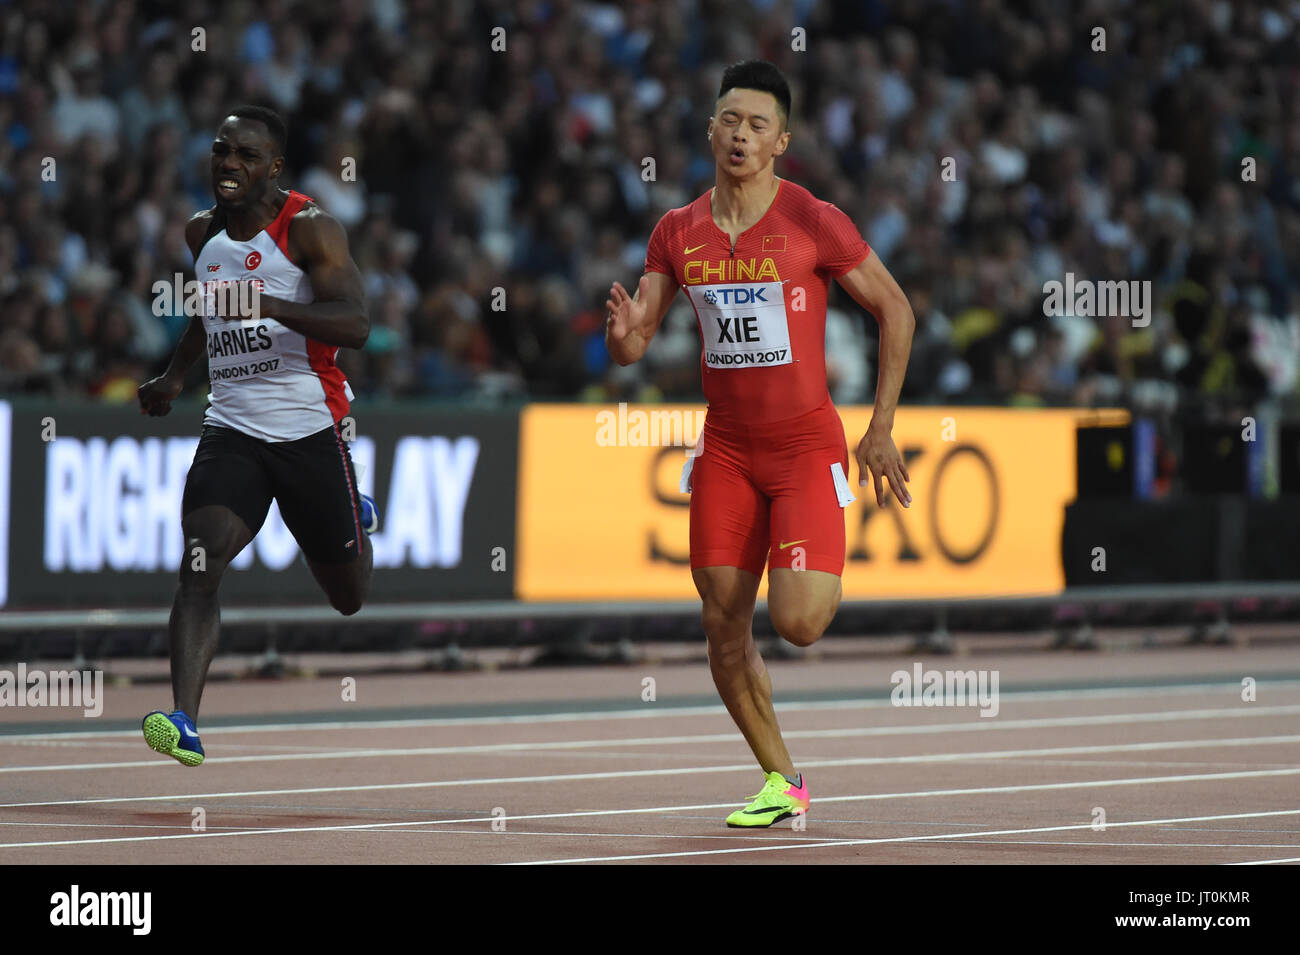 Zhenye XIE, China während 100 Meter Runde zuerst im London Stadium in London am 4. August 2017 auf 2017 IAAF Weltmeisterschaften Leichtathletik. Stockfoto